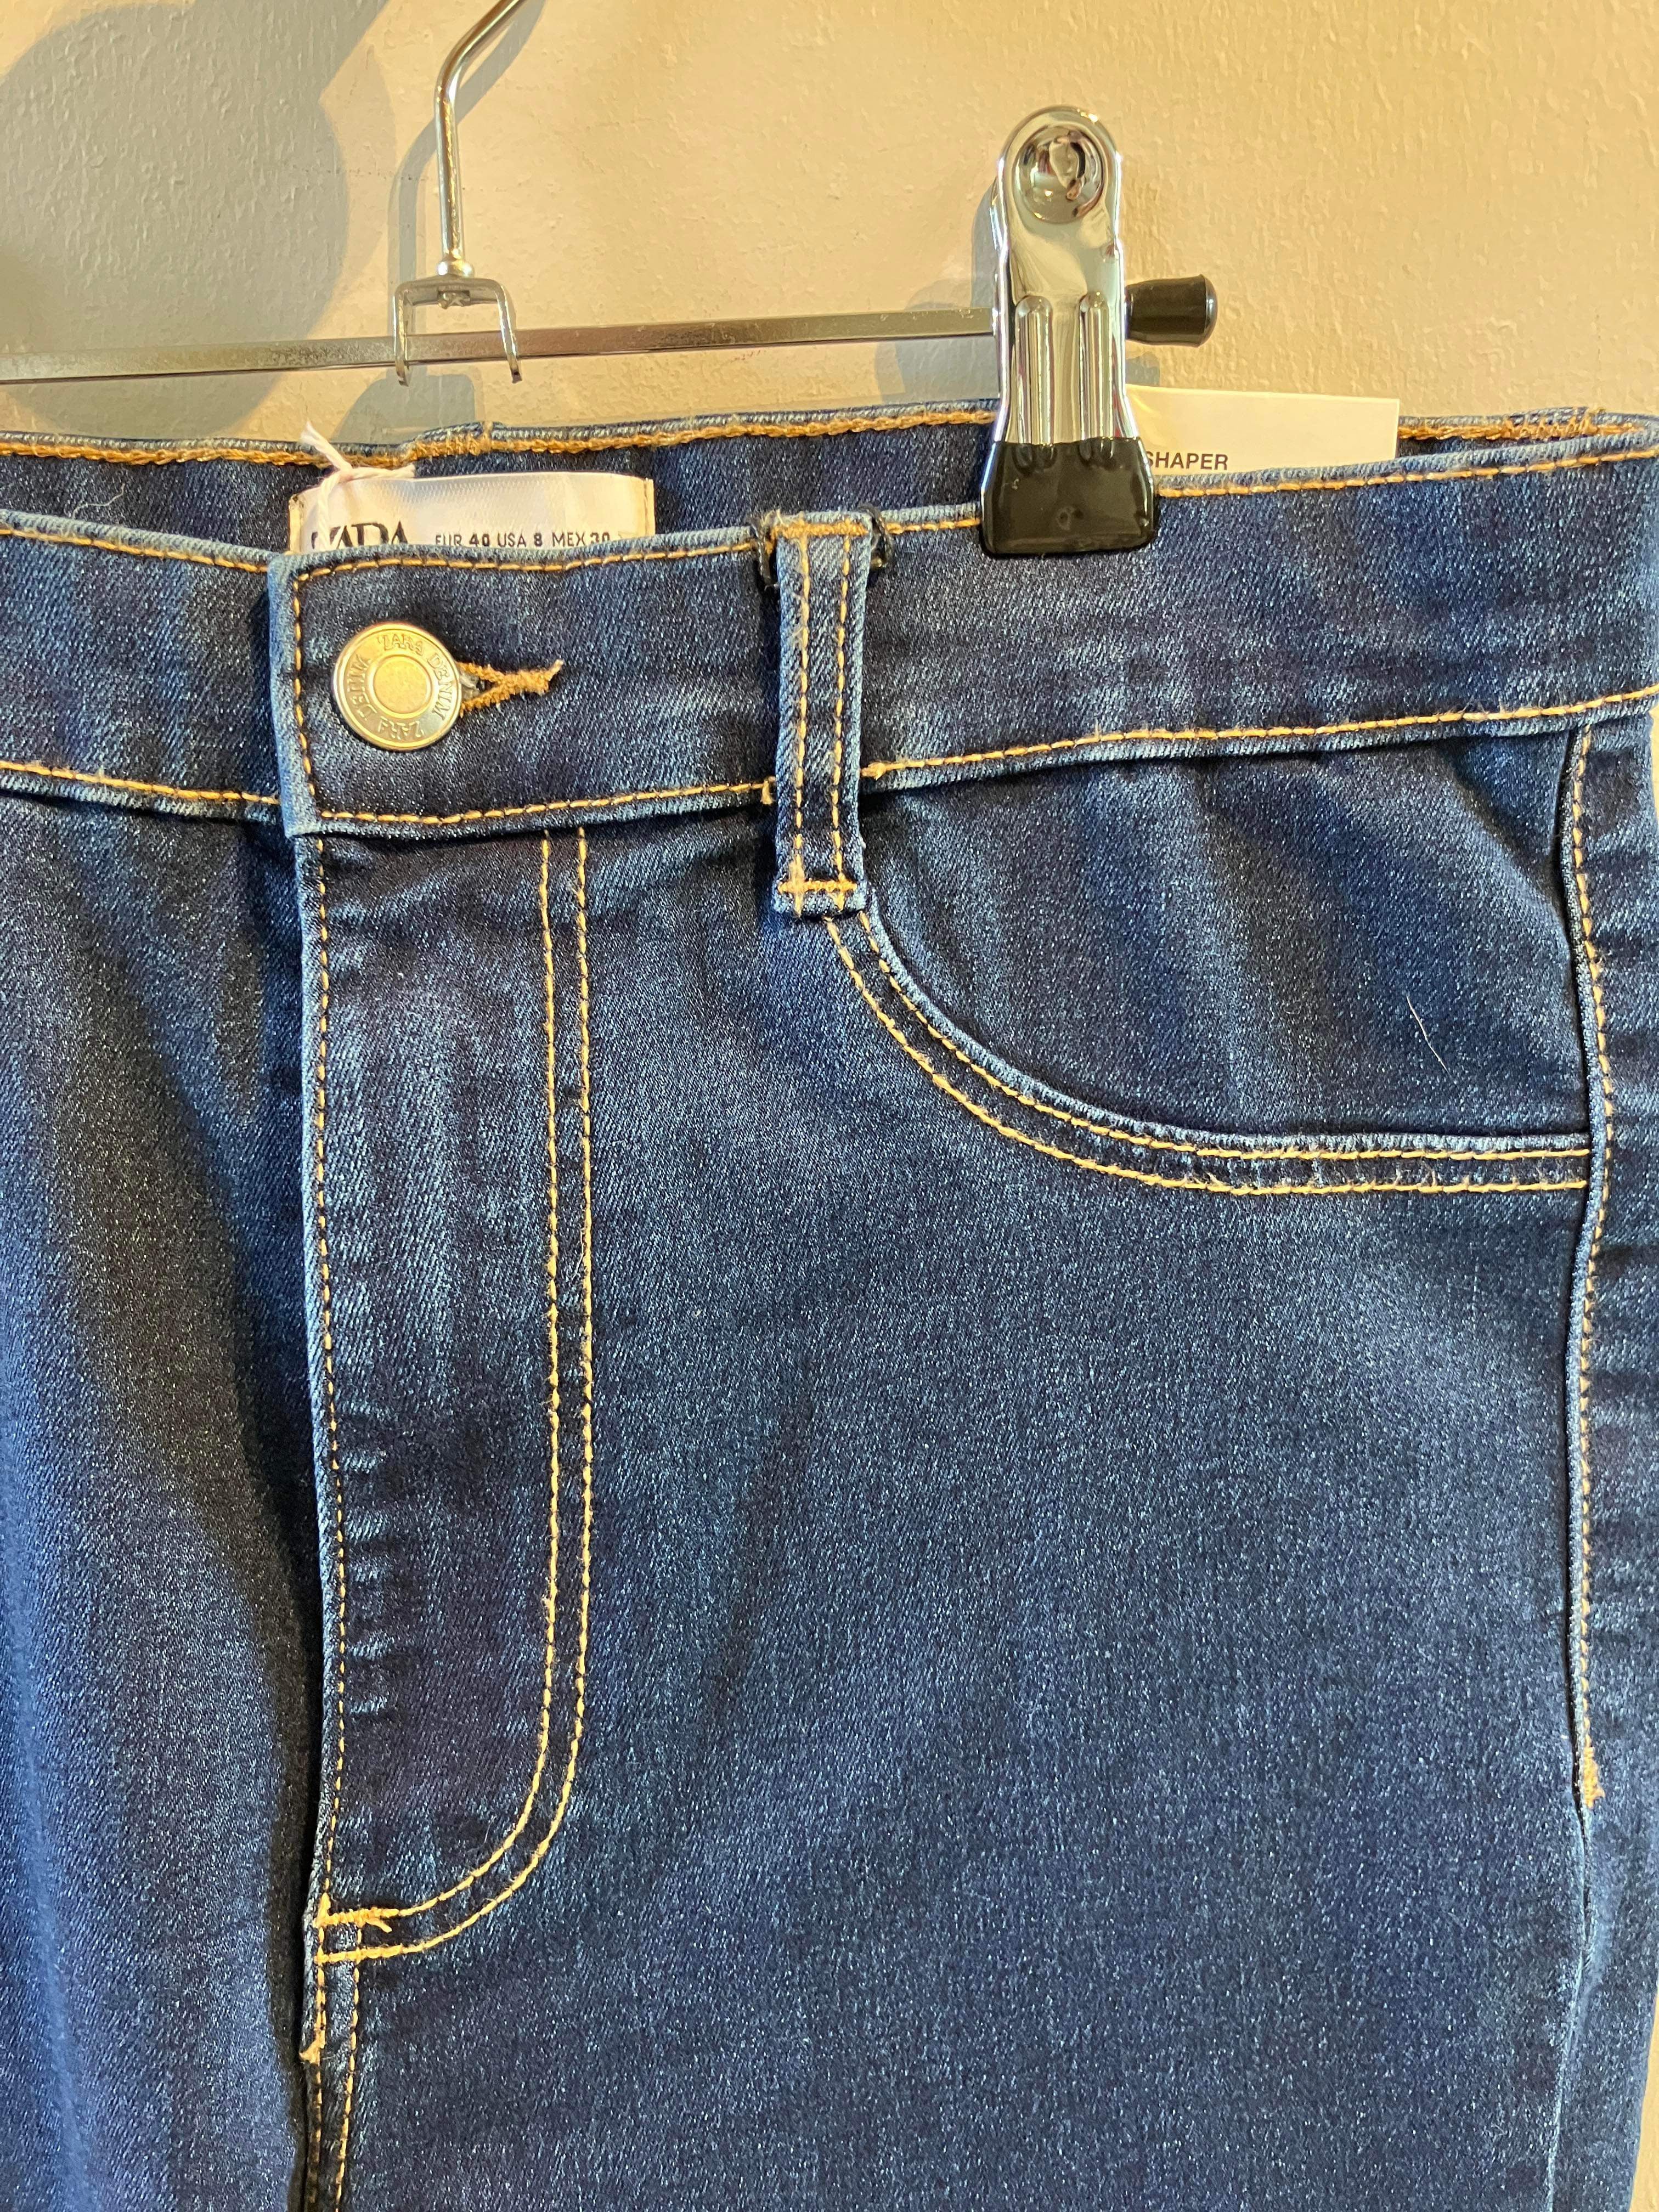 Zara - Jeans - Size: 40